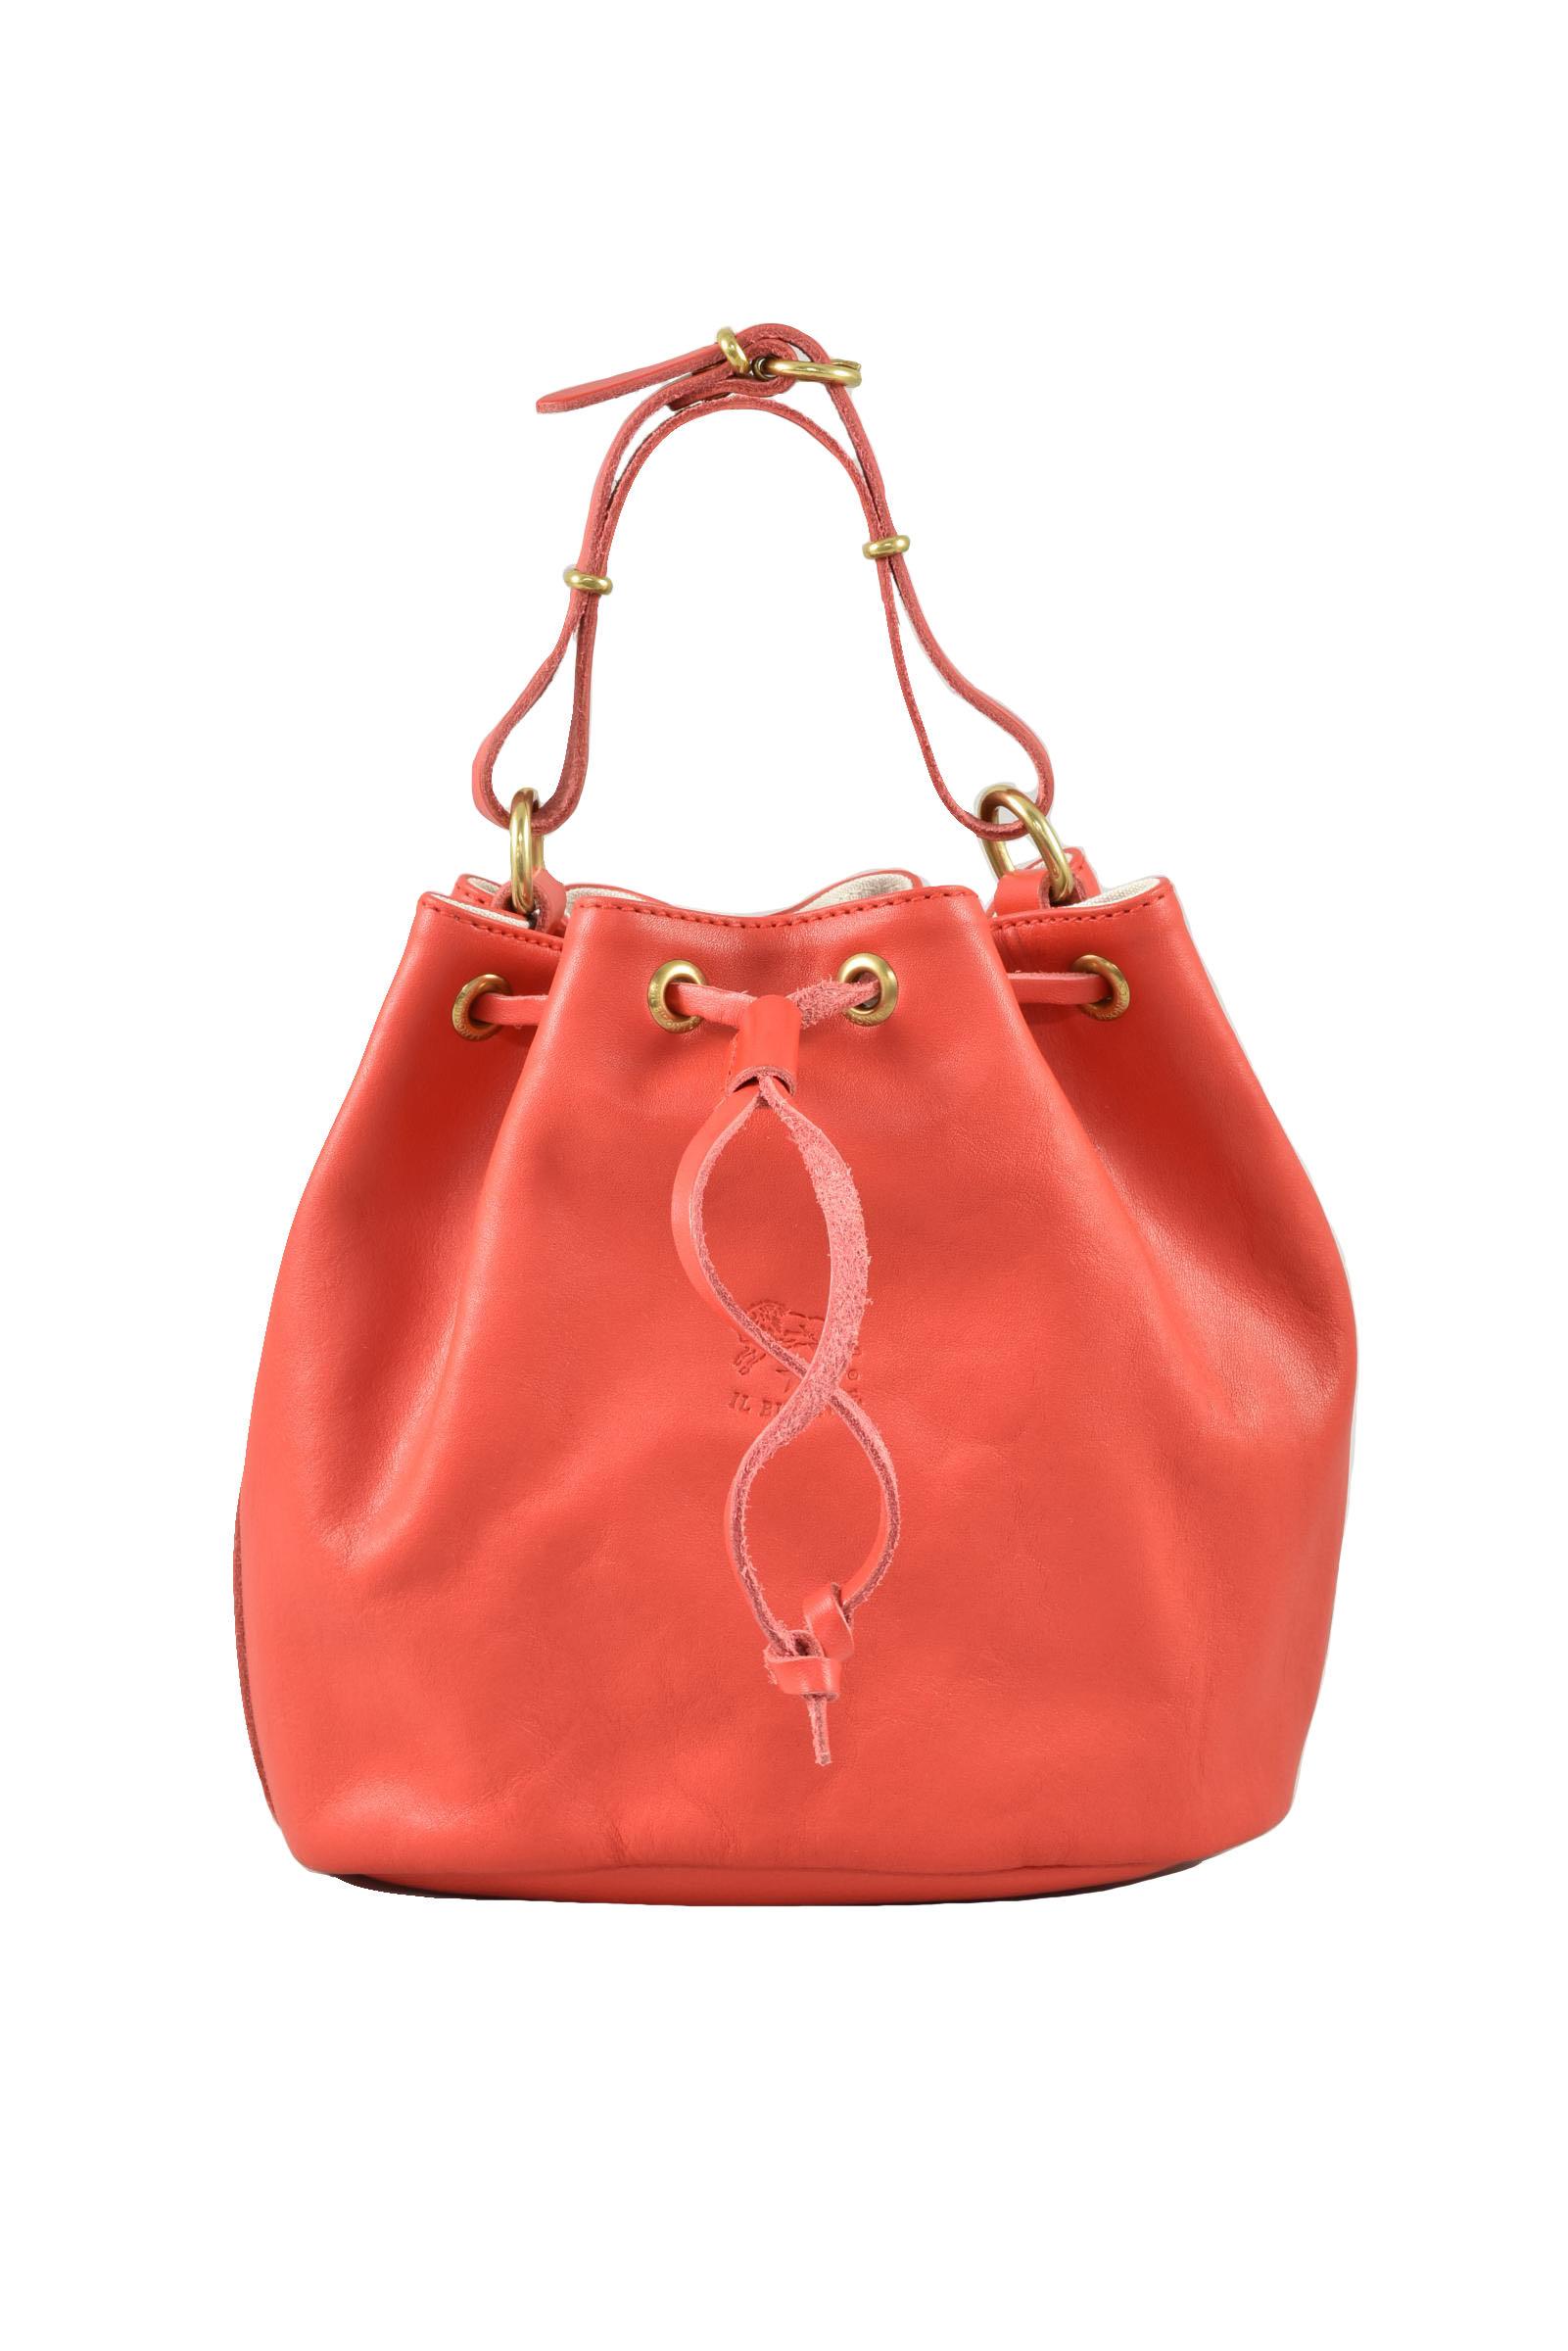 Il Bisonte Women's Red Handbag